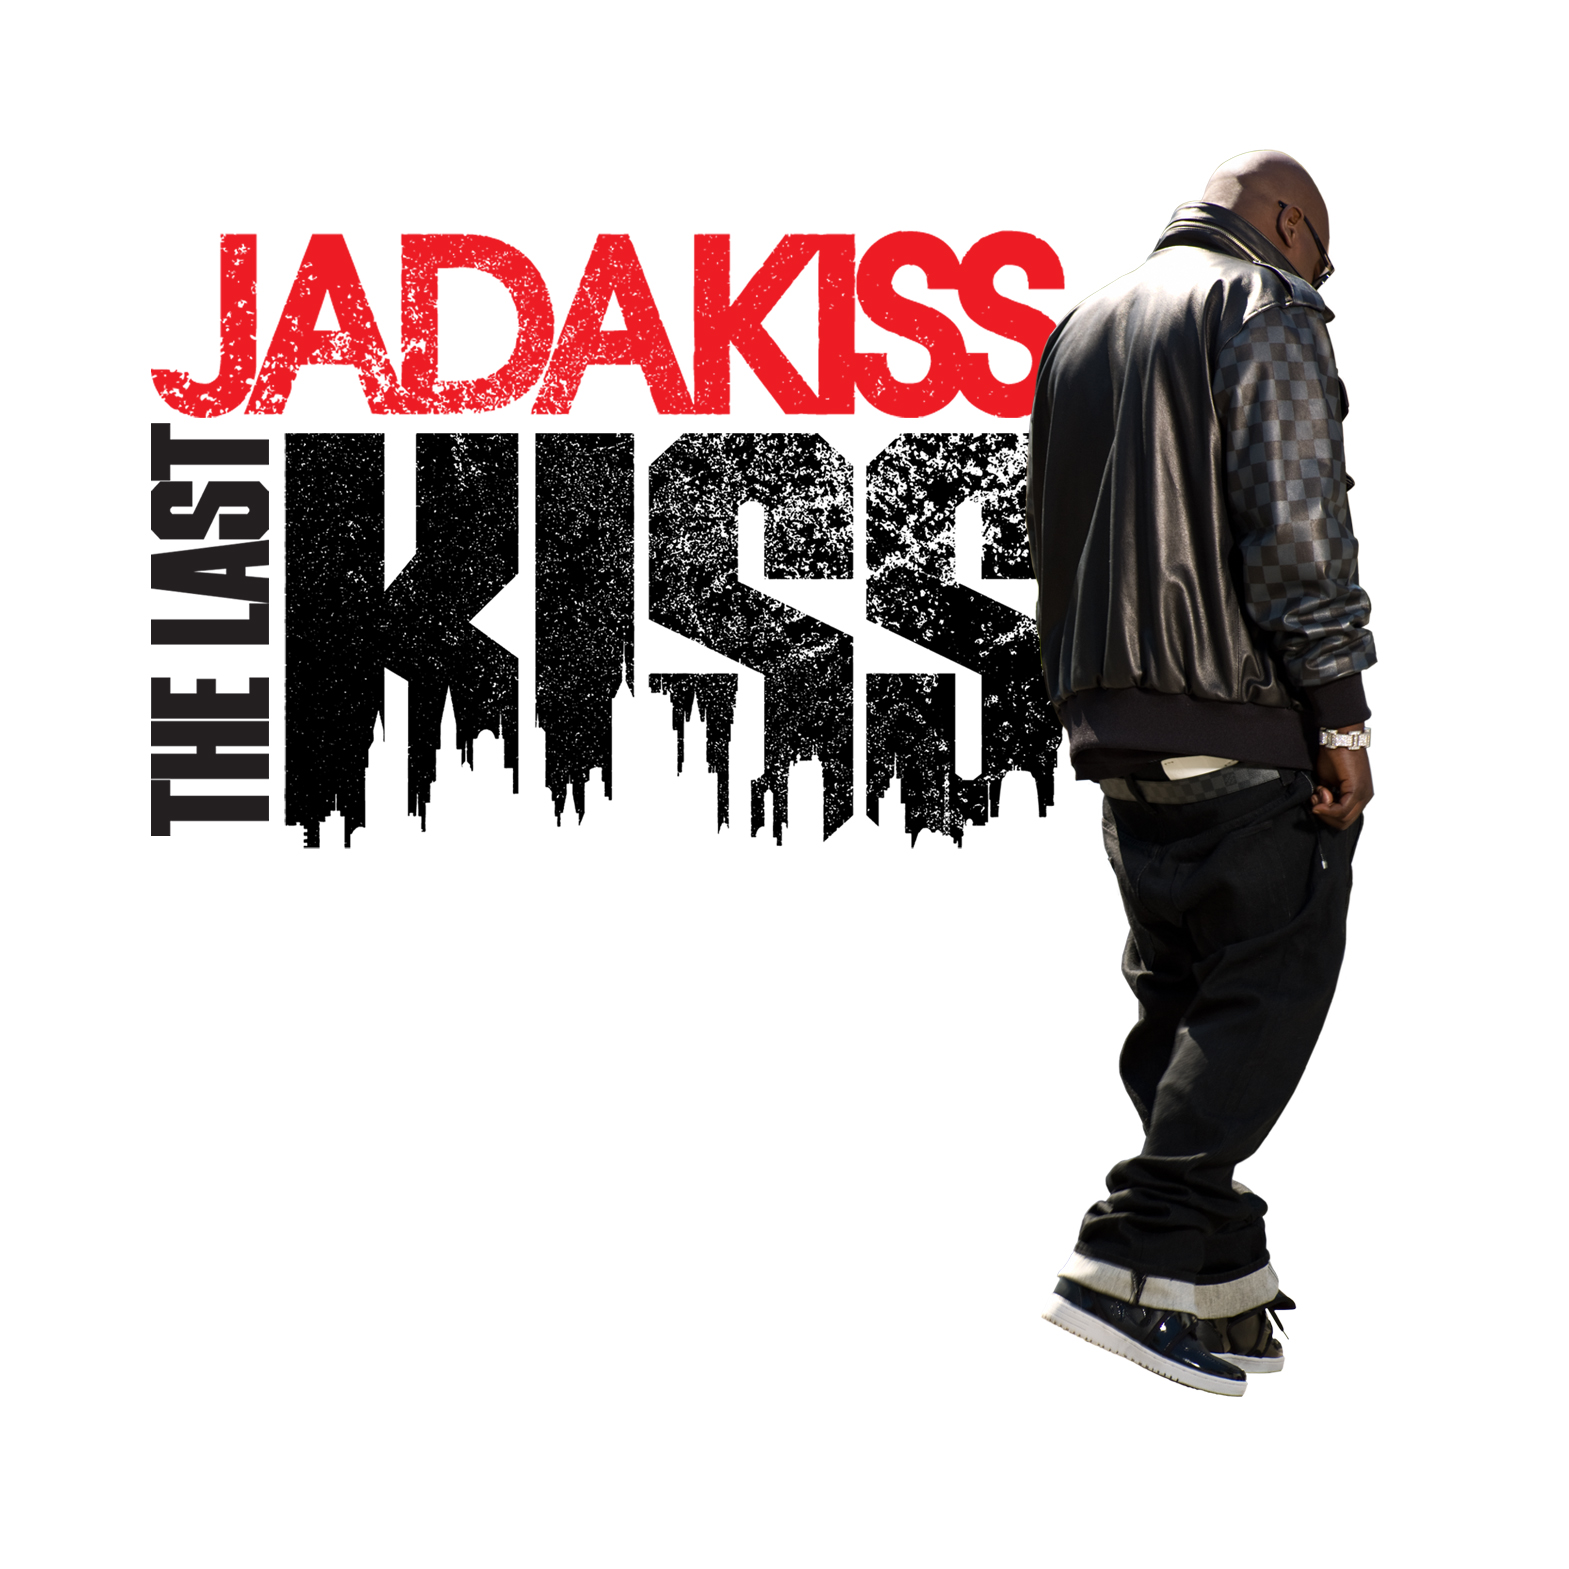 Jadakiss Kiss Of Death Download Rar